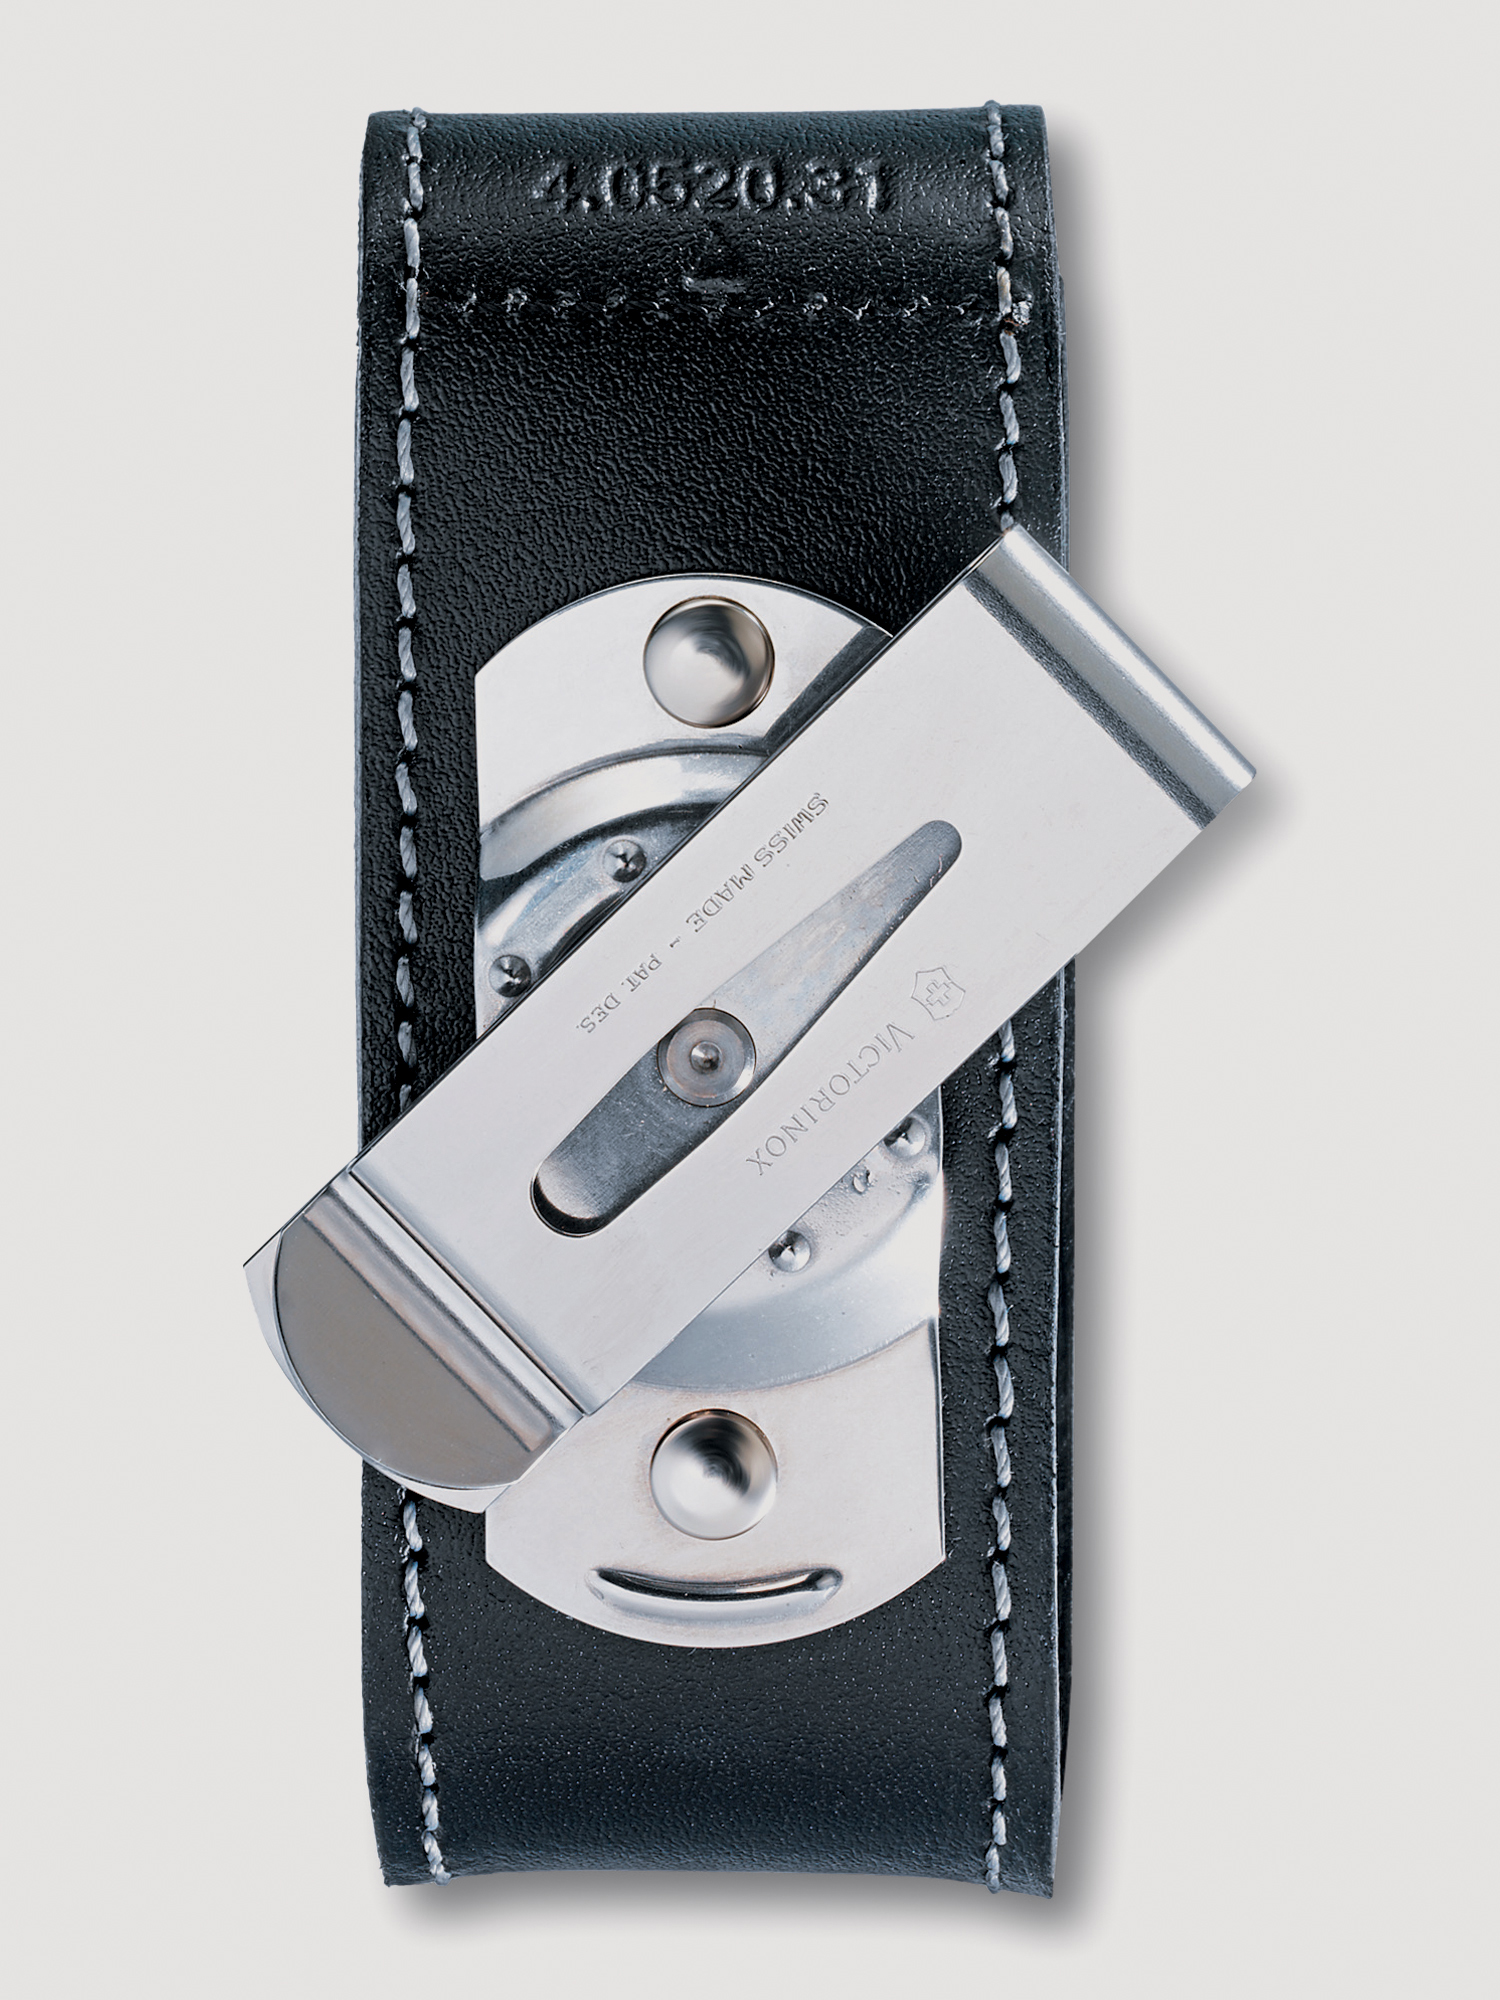 Чехол на ремень VICTORINOX для ножей 91мм толщиной 2-4 уровня, с поворотной клипсой, кожаный, чёрный, Черный ремень чехол miggo для зеркальных камер серая галька